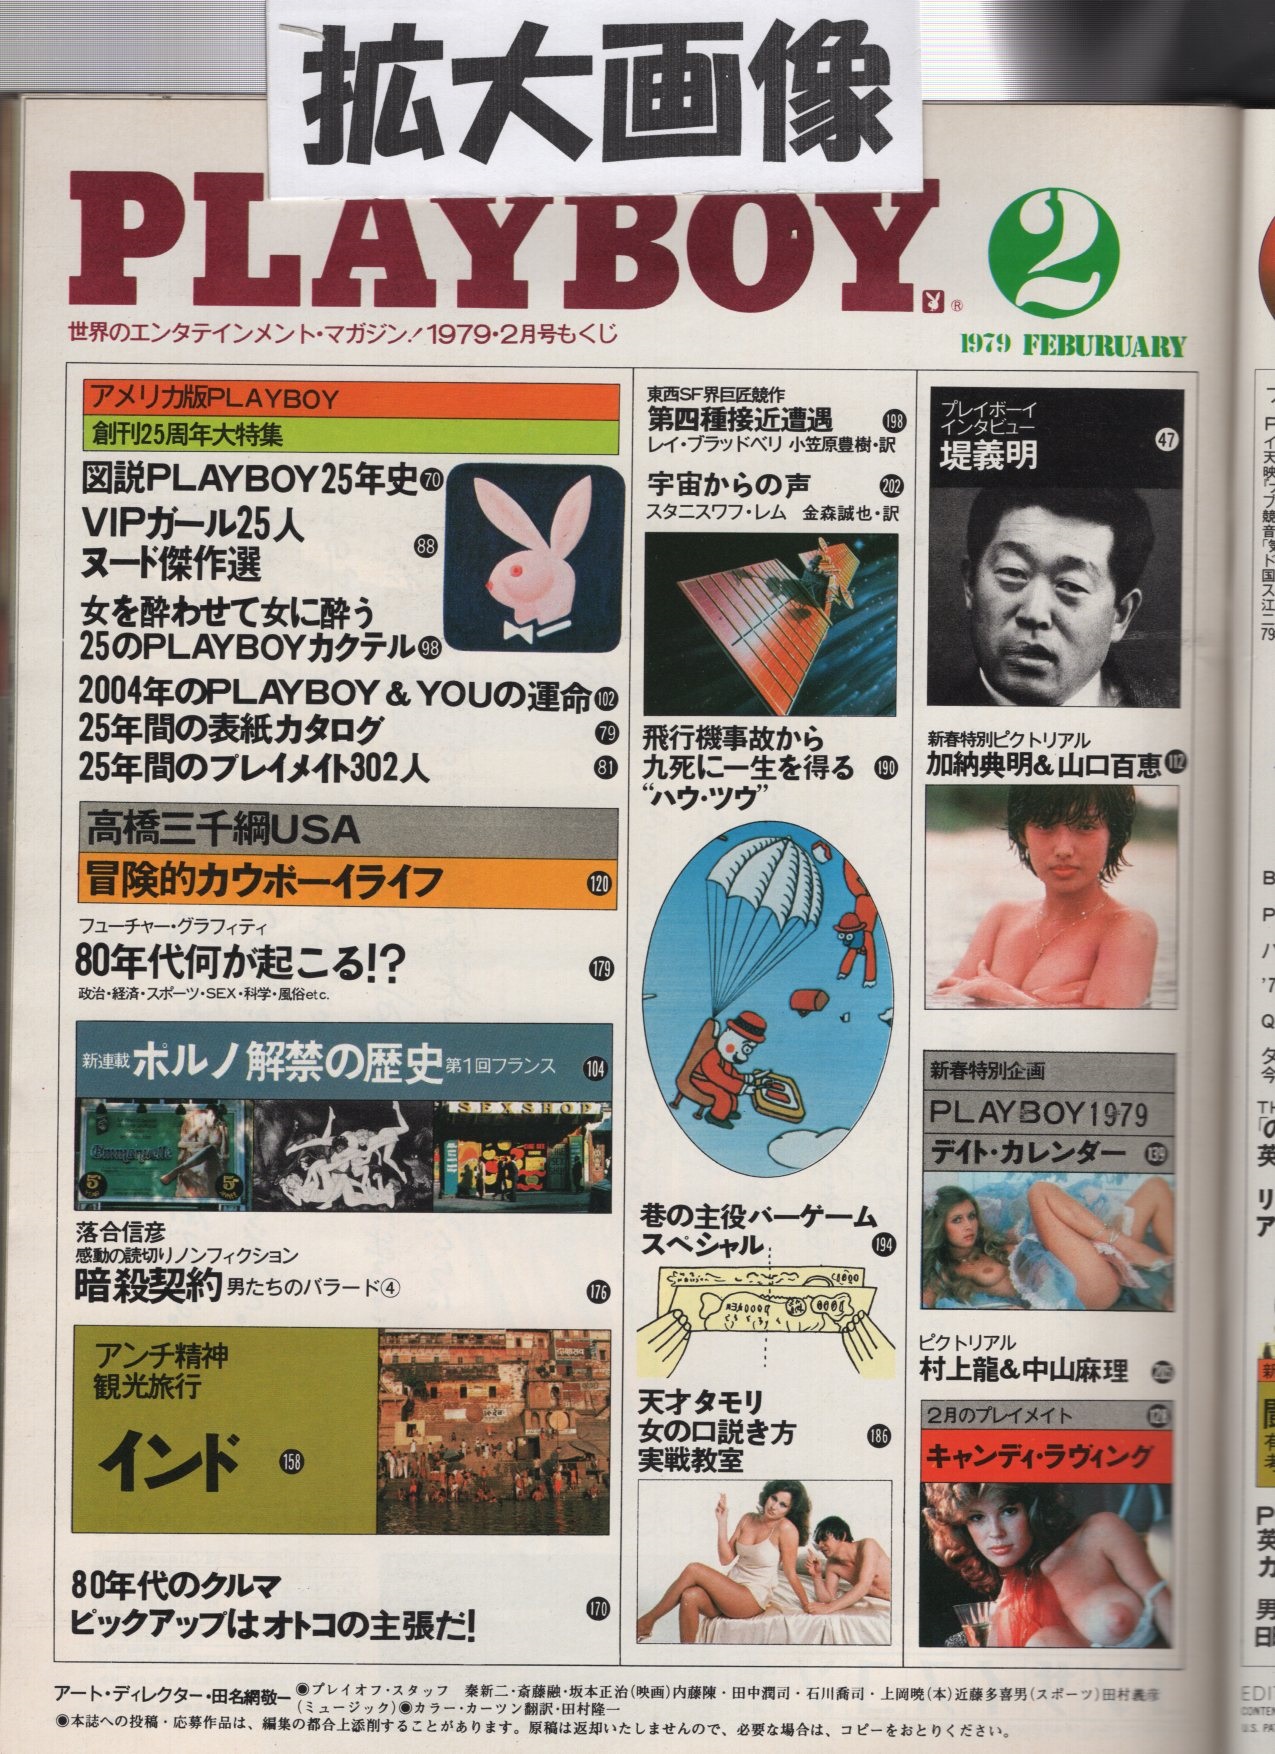 月刊プレイボーイ PLAYBOY 日本版 44号 昭和54年2月(〈天才タモリ 女の 